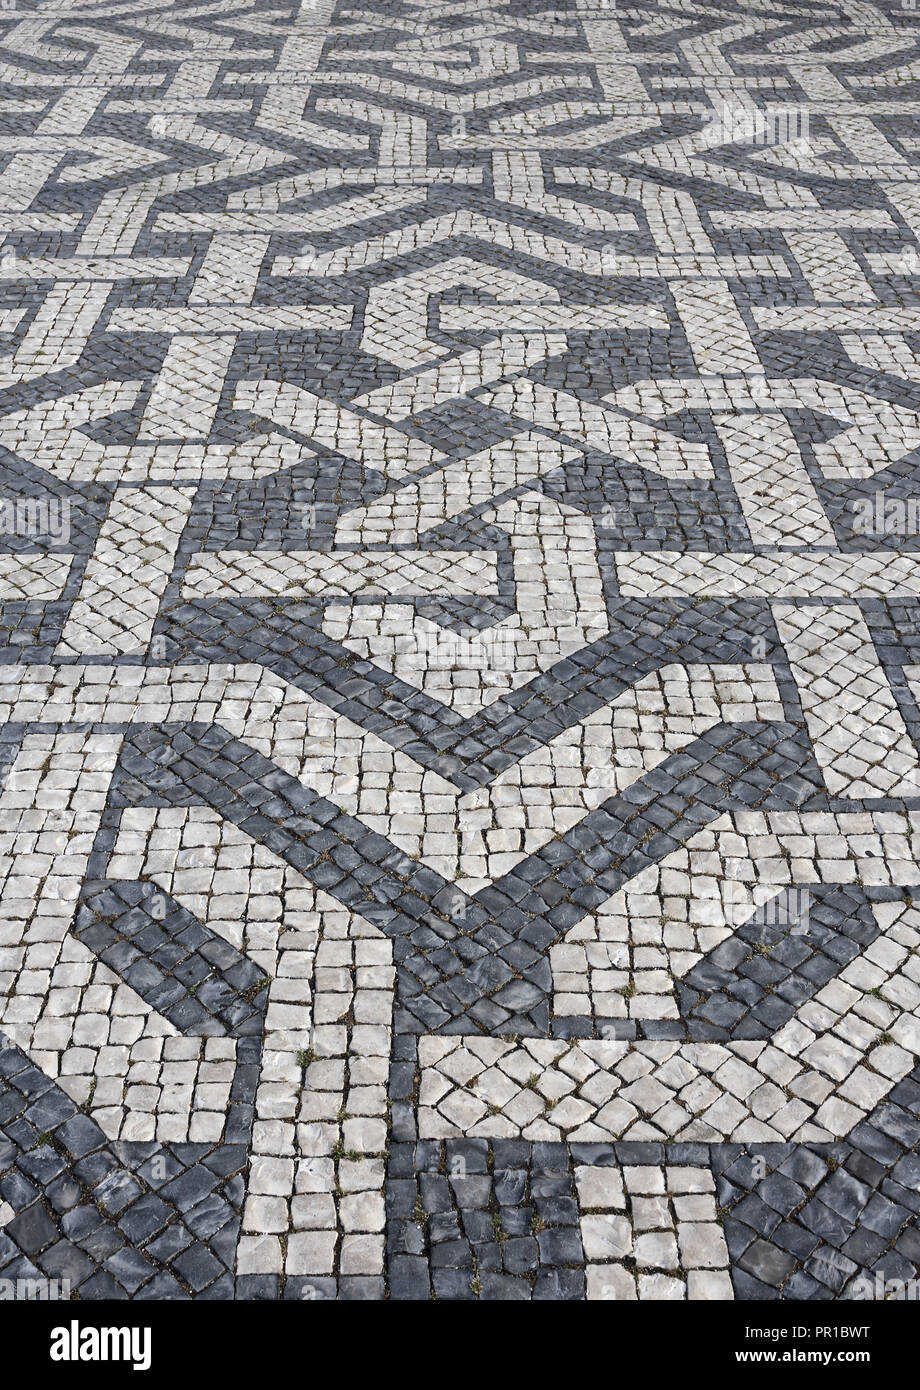 Tipica portoghese bianco e nero mosaico pietra calcada marciapiede - trovati in tutto il Portogallo - Lisbona, Cascais, Guimaraes. Anche in trovata in Brasile. Foto Stock